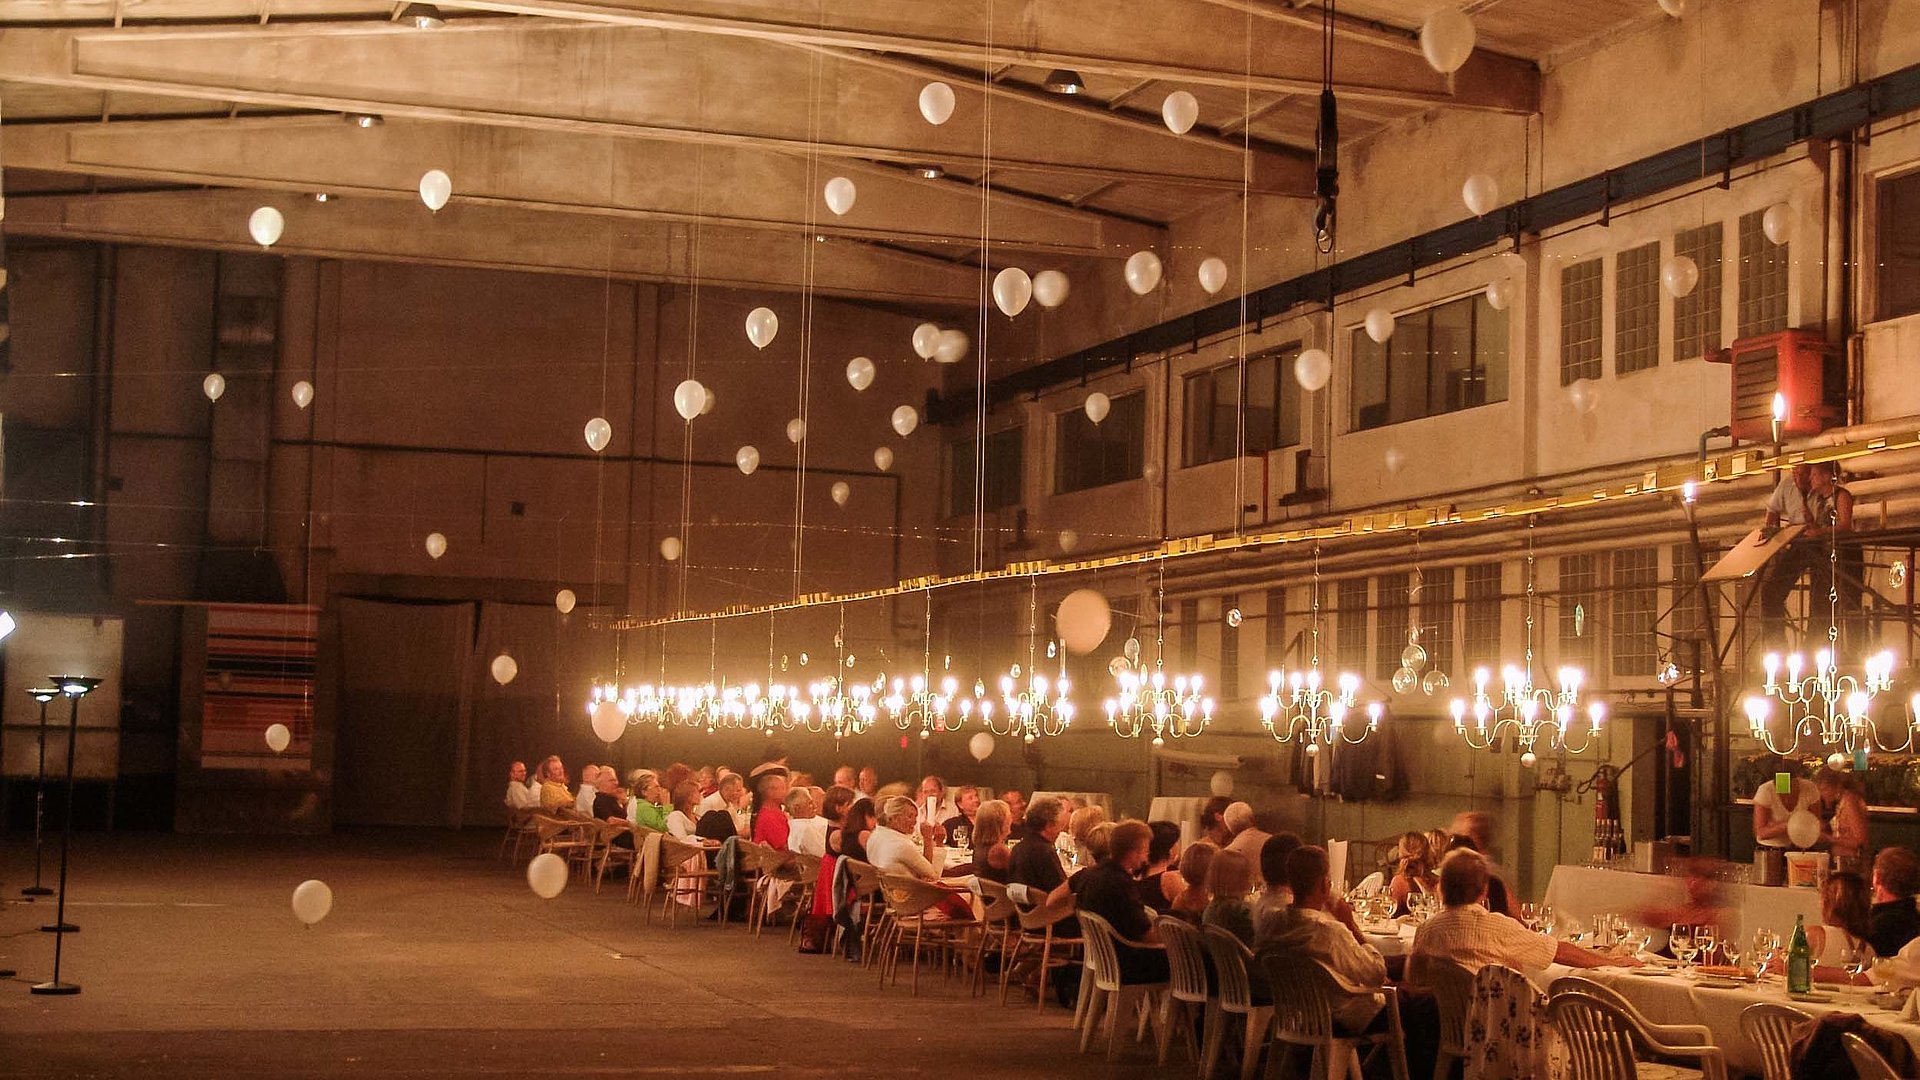 Event-Gastronomie am Chiemsee - Festsaal gefüllt mit einer Gruppe von Menschen